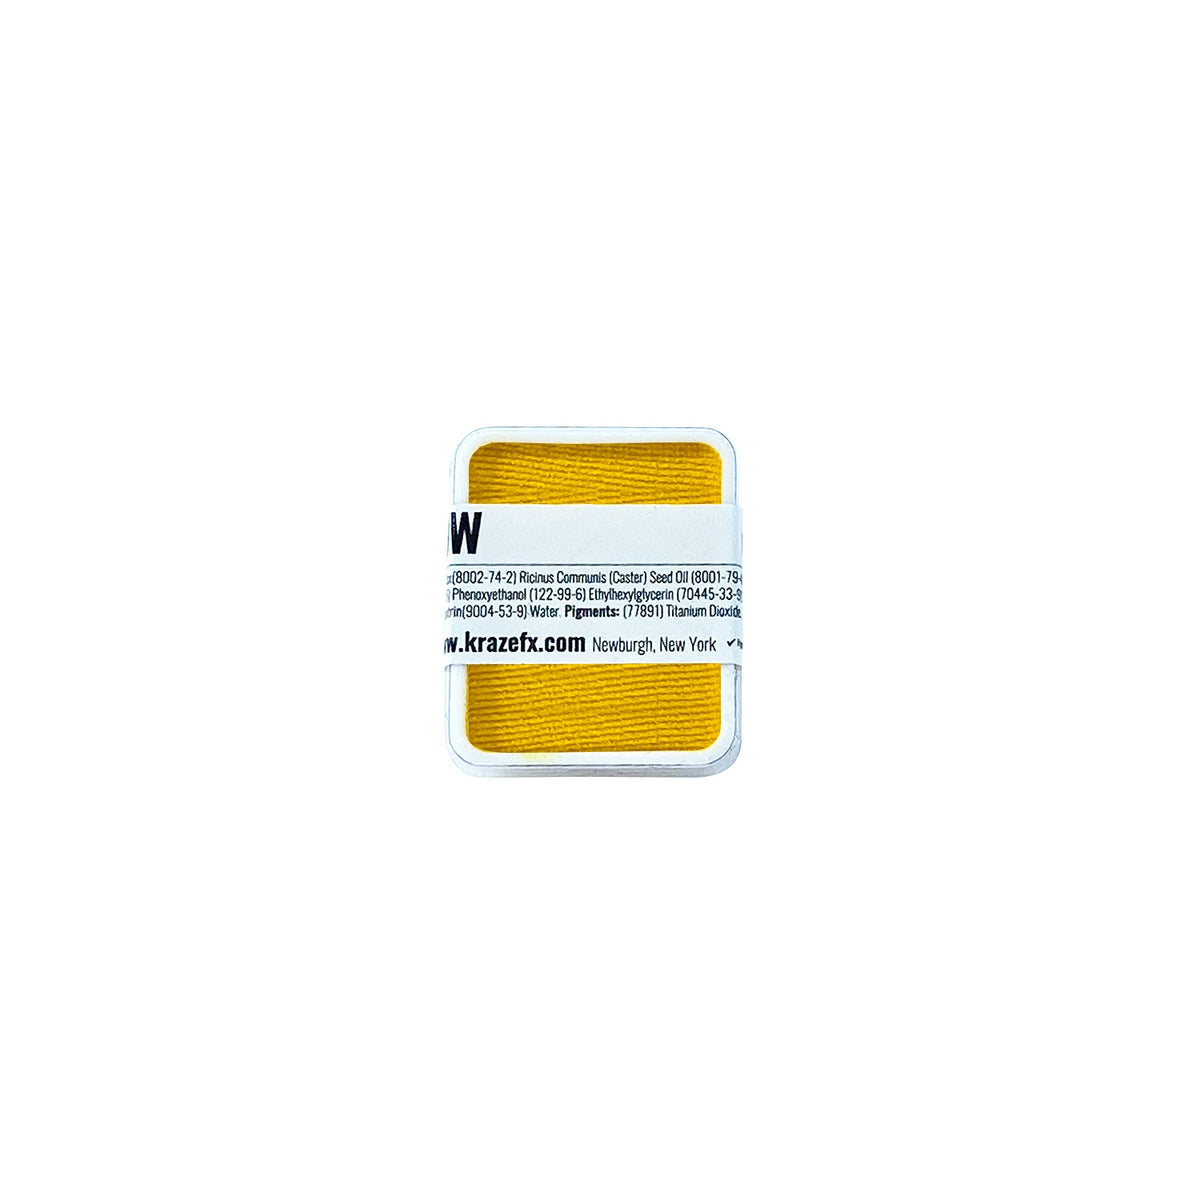 Kraze FX Face Paint Palette Refill - Yellow (0.21 oz/6 gm)